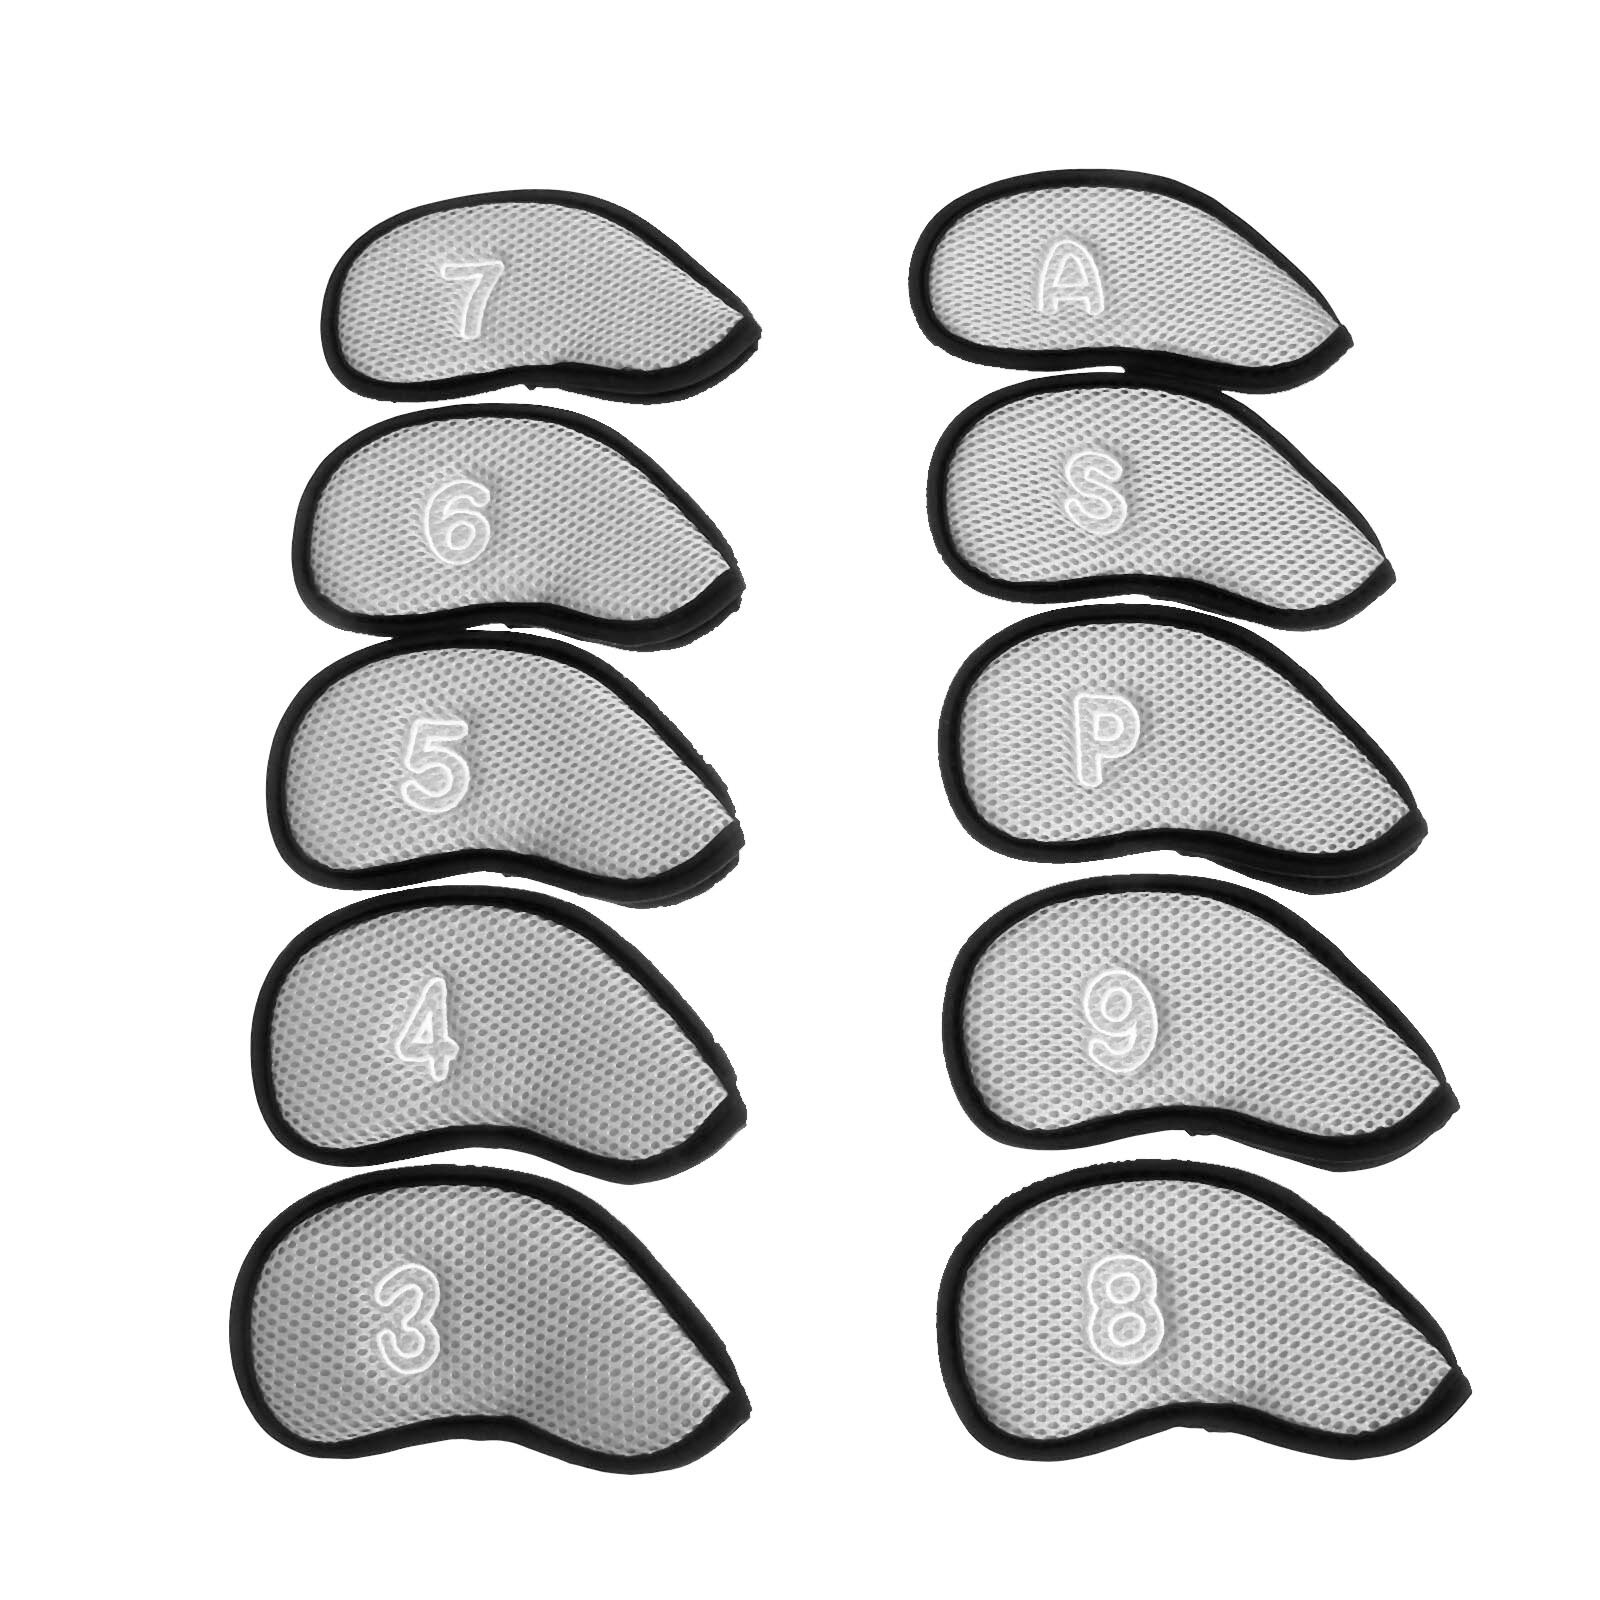 10 stk golfklubhoveddæksler af neoprennet mesh beskyttelsessæt med nummer  (3,4,5,6,7,8,9, a, s, p) passer til de fleste standardklubber